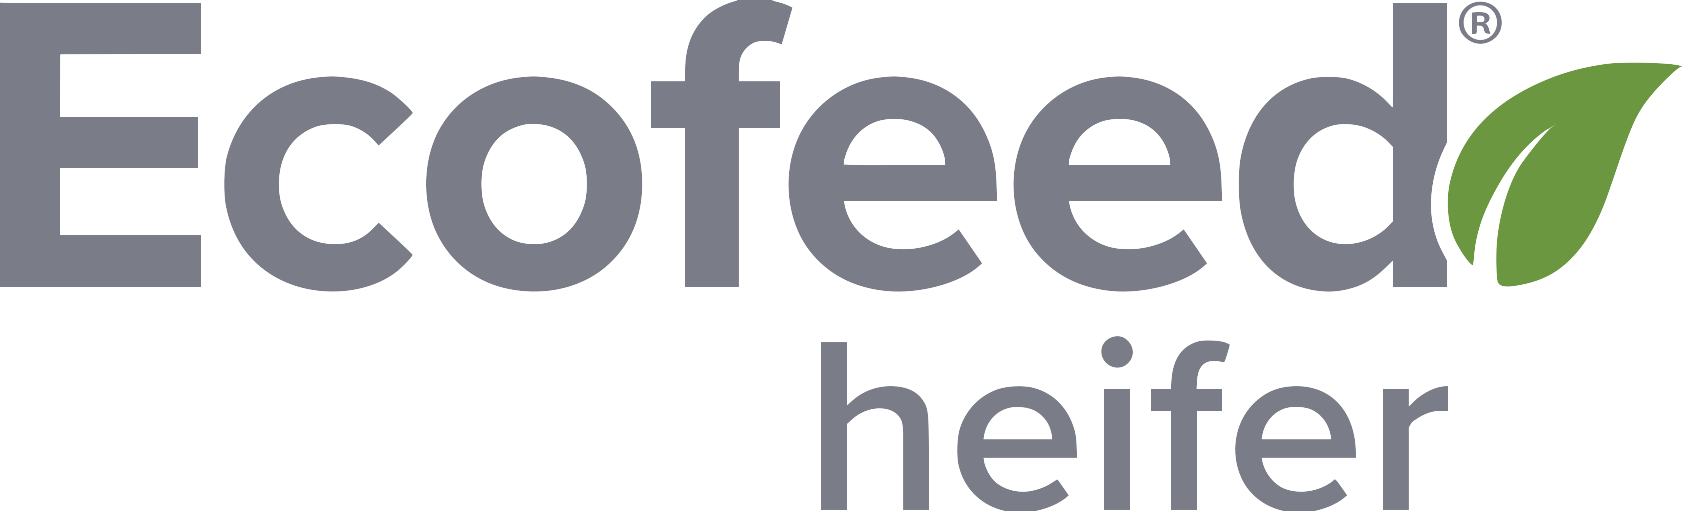 EcoFeed Heifer